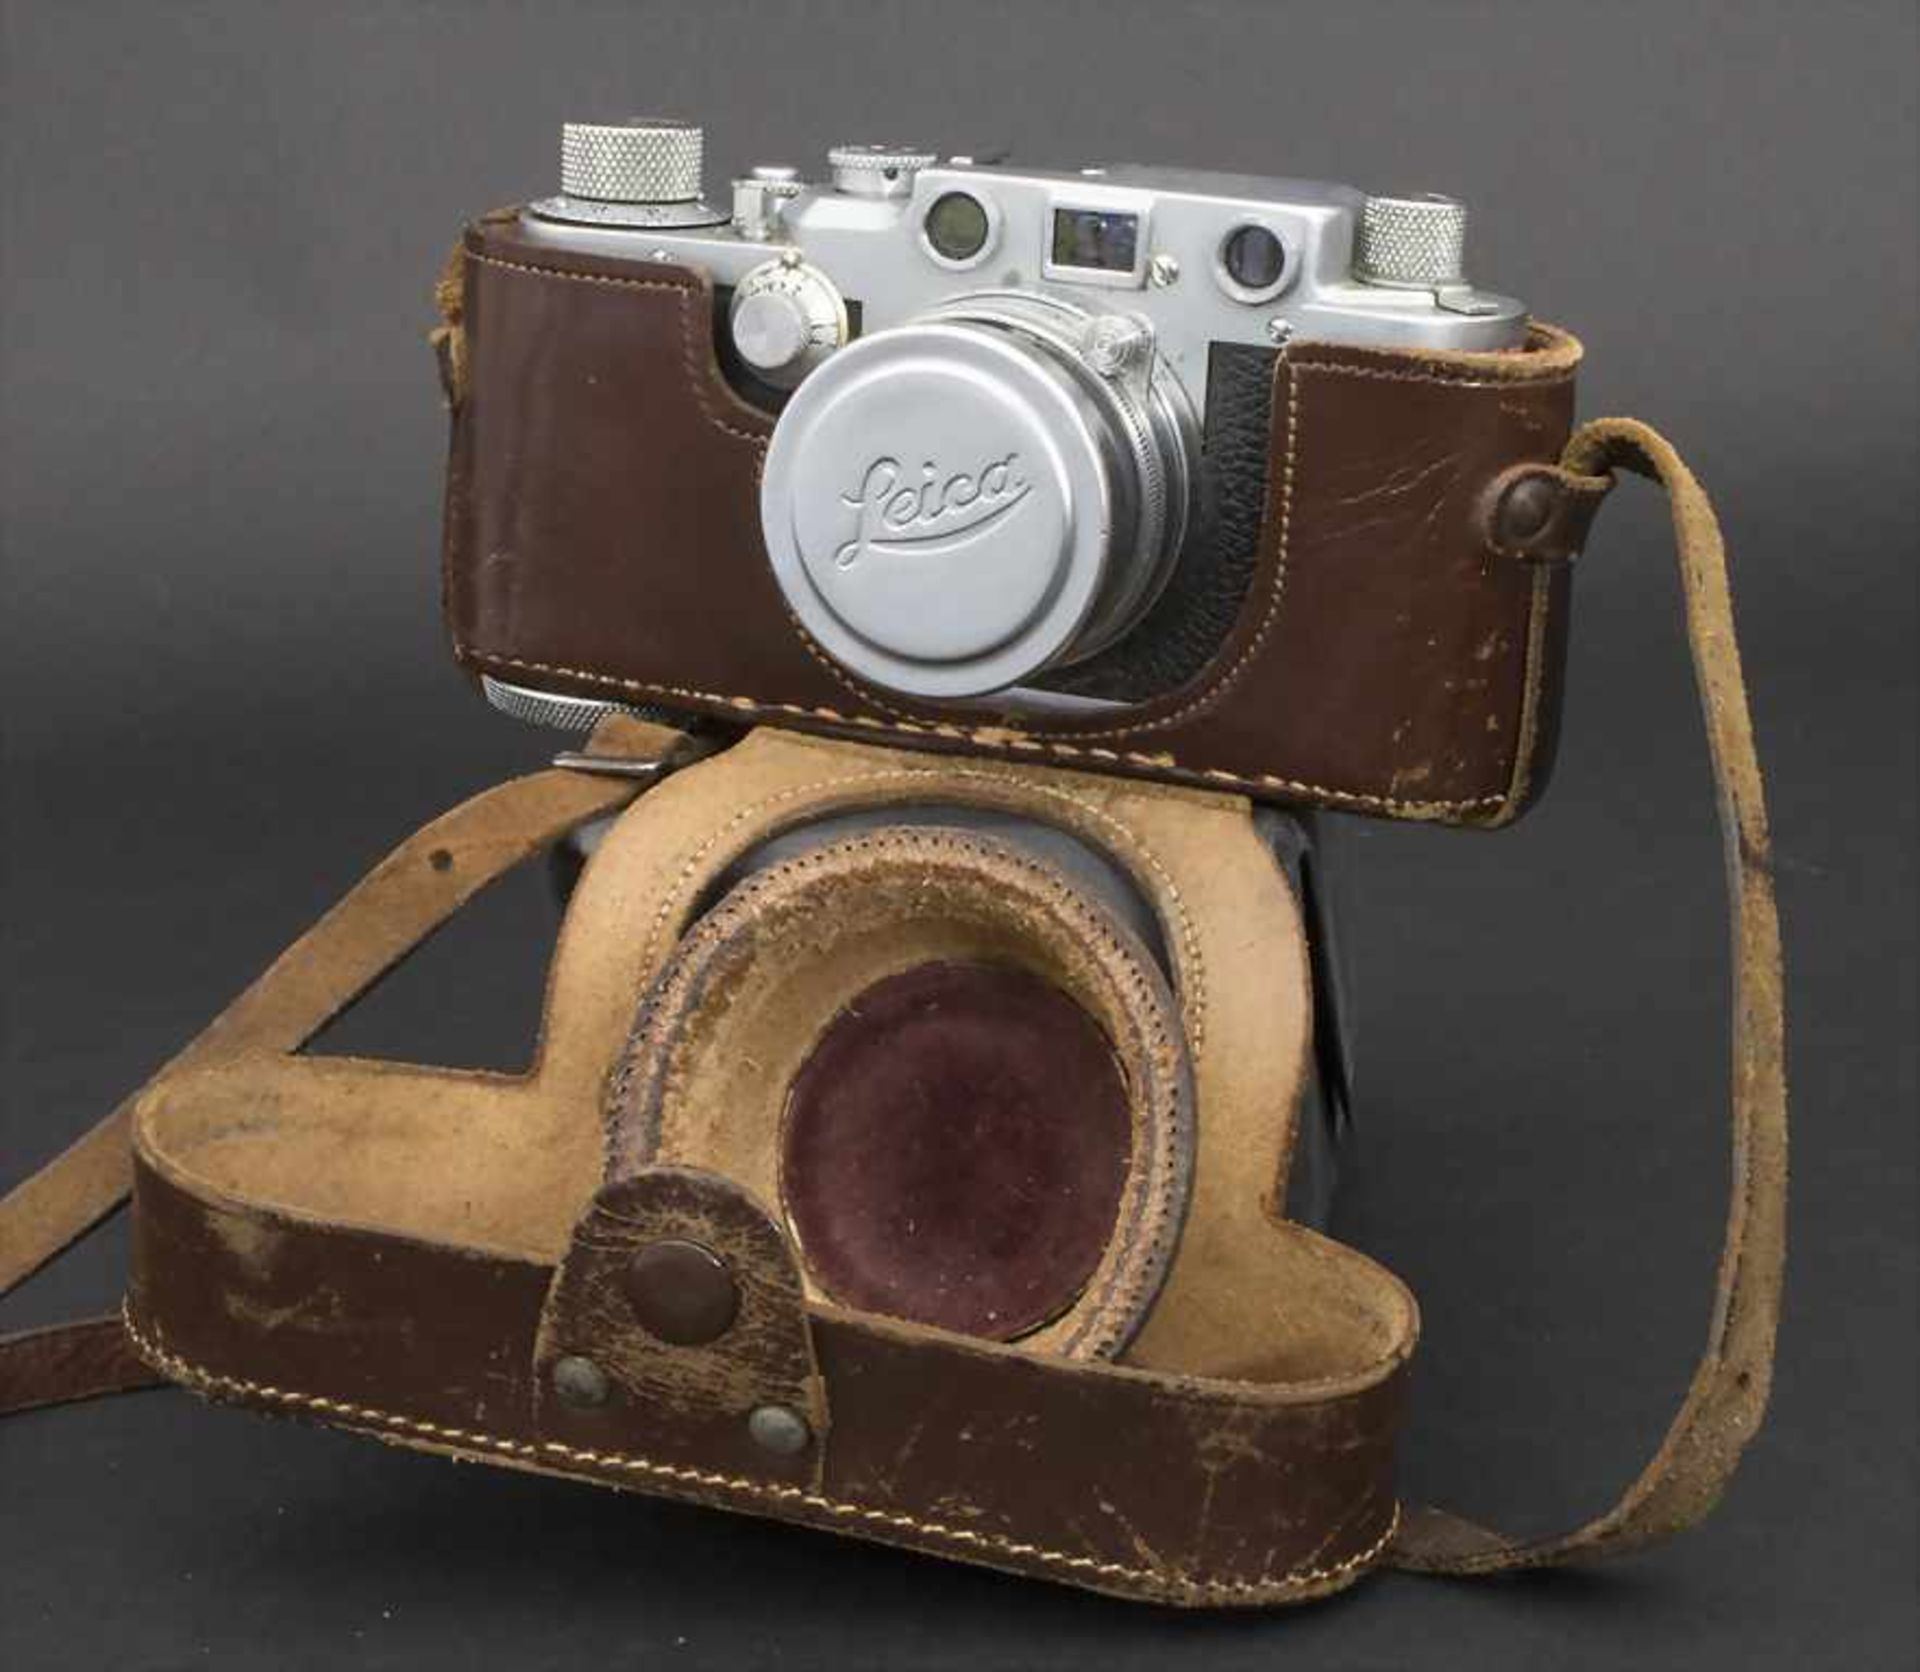 Leica, Ernst Leitz GmbH, WetzlarKamera Nr. 422612, Objektiv f=5cm 1:2 Nr. 629832.Z